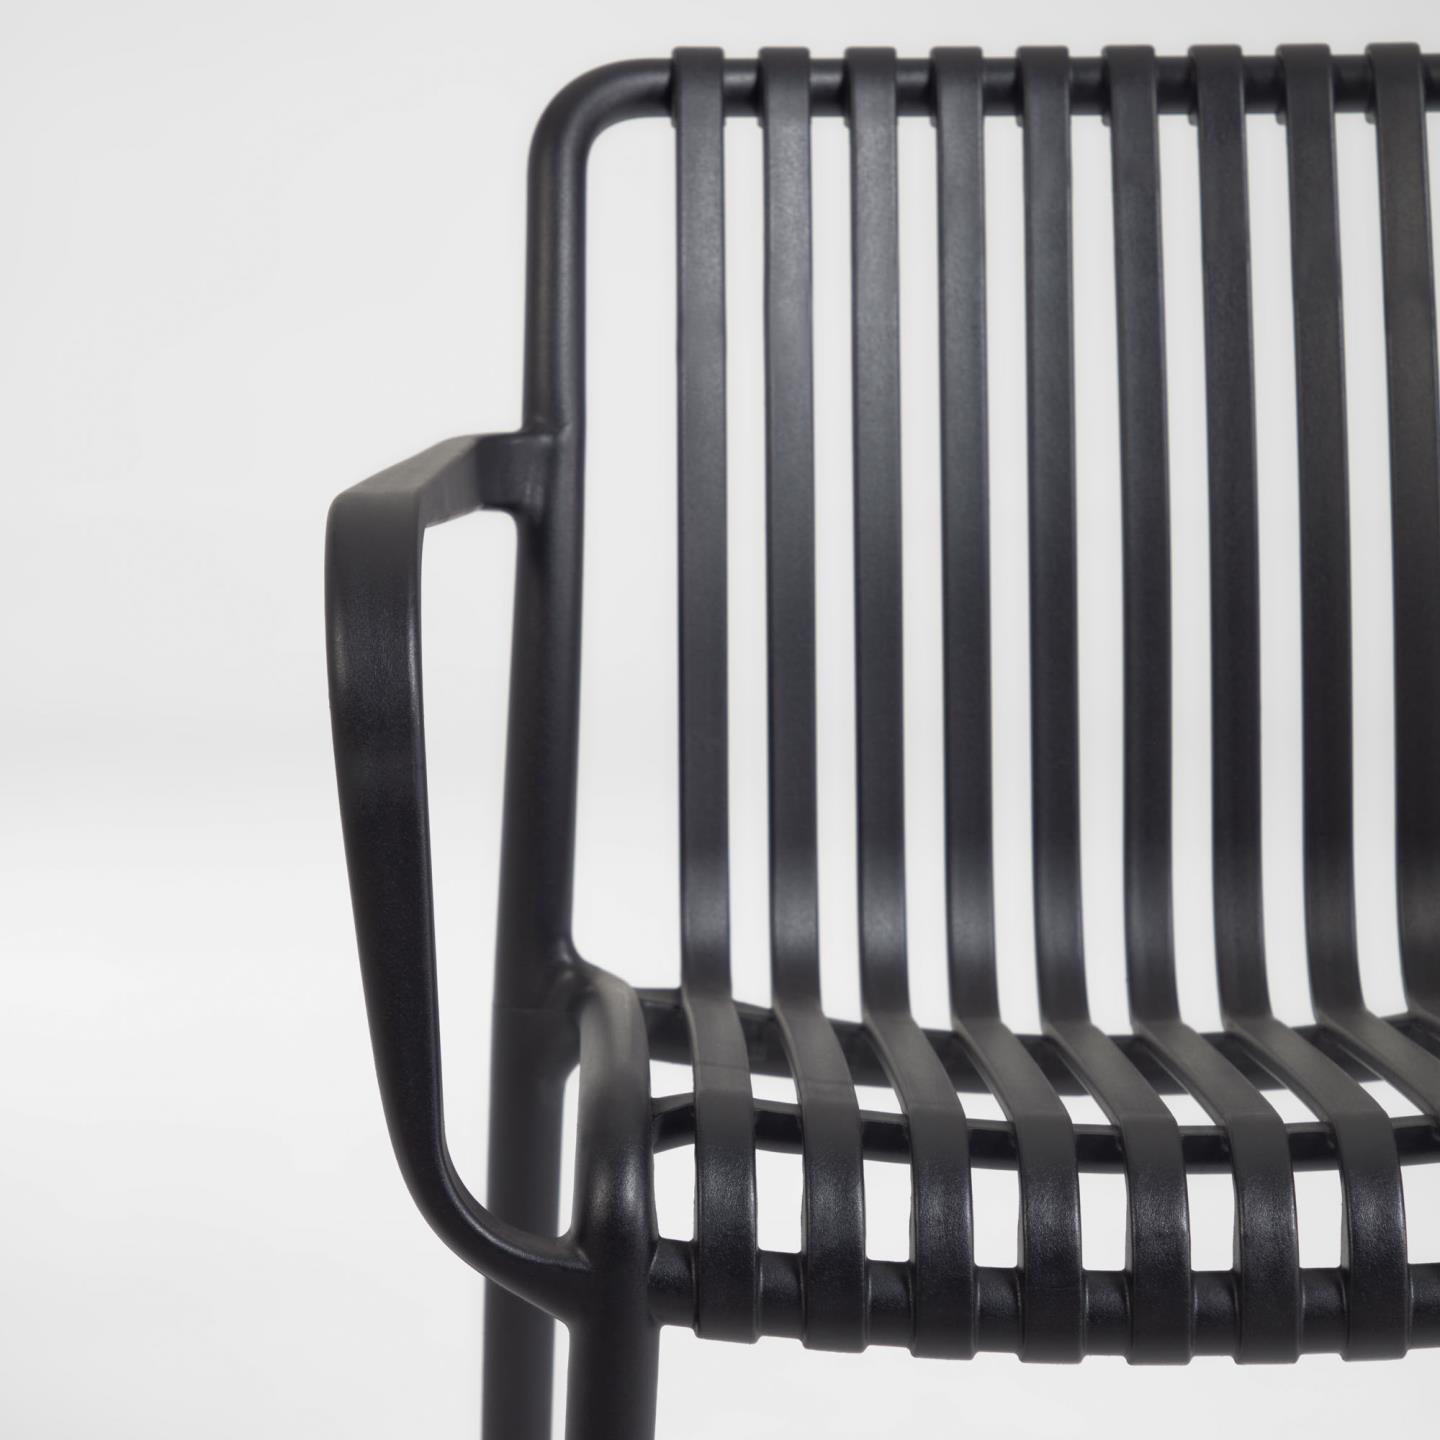 Isabellini garden chair in black